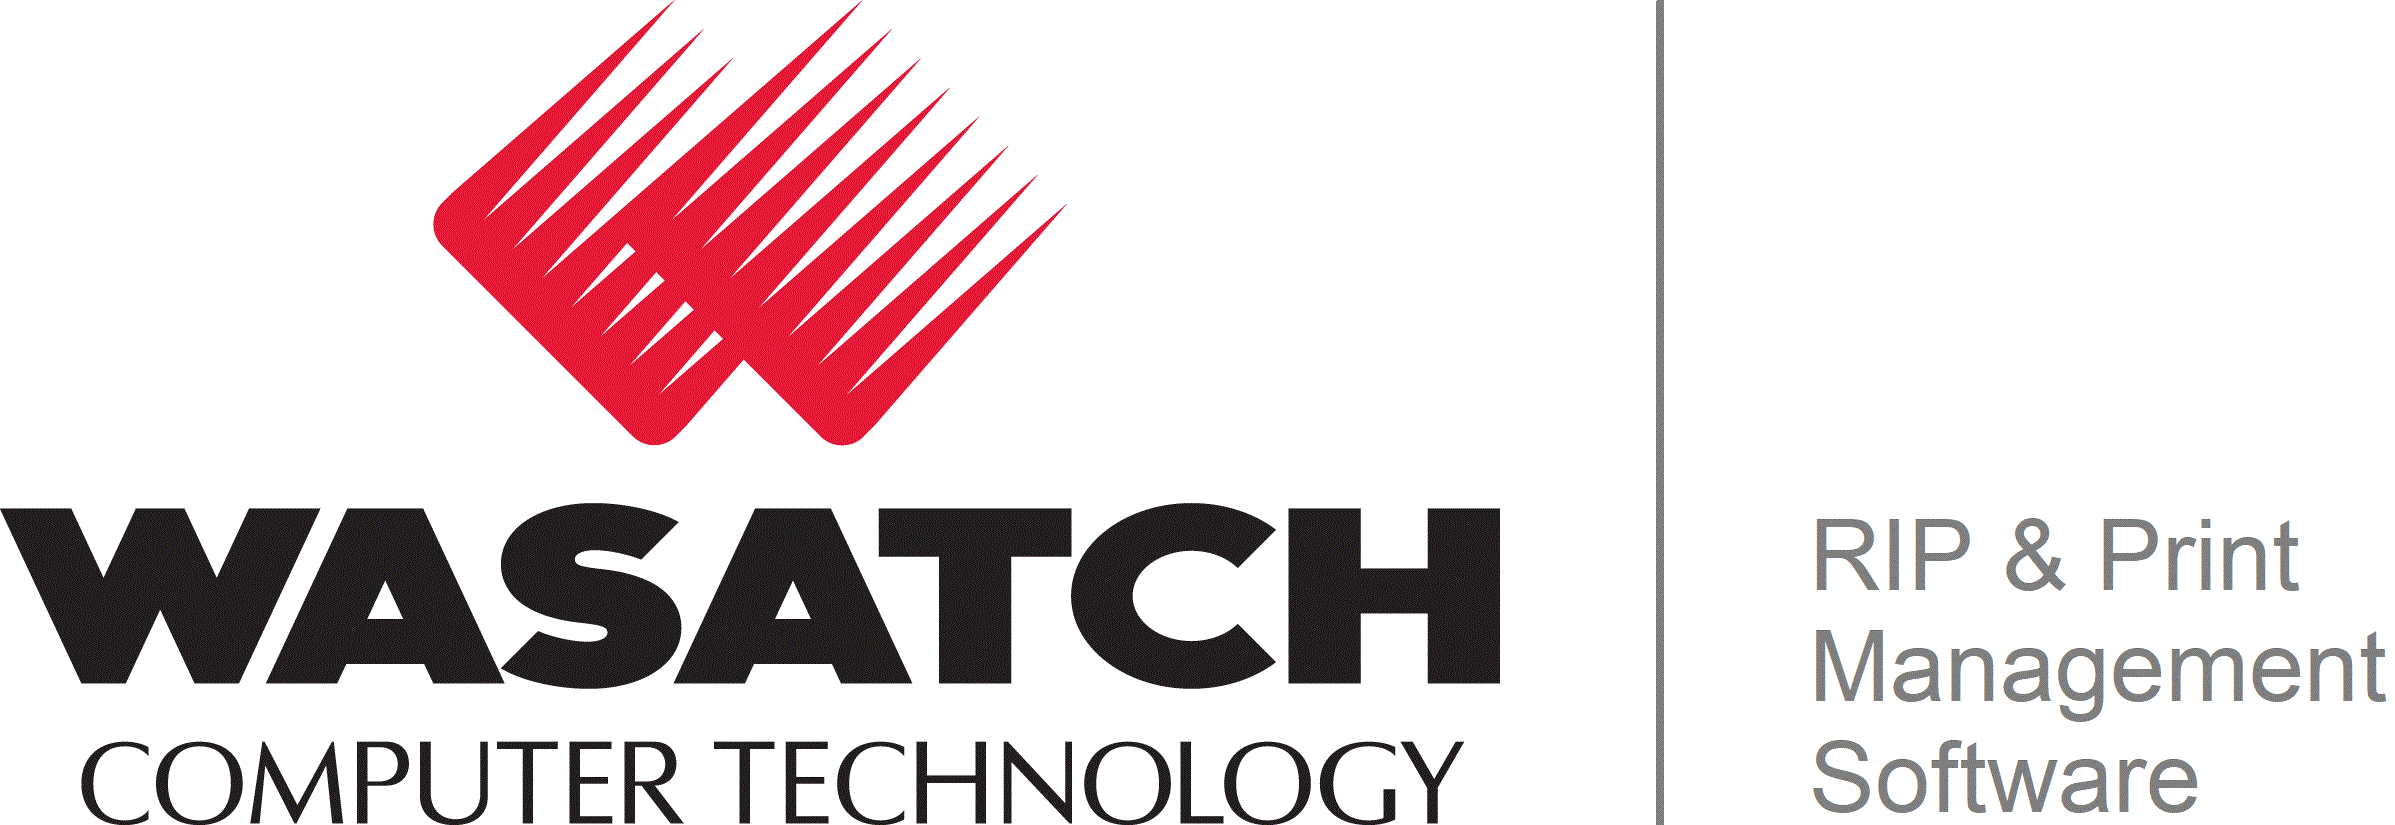 wasatch-logo